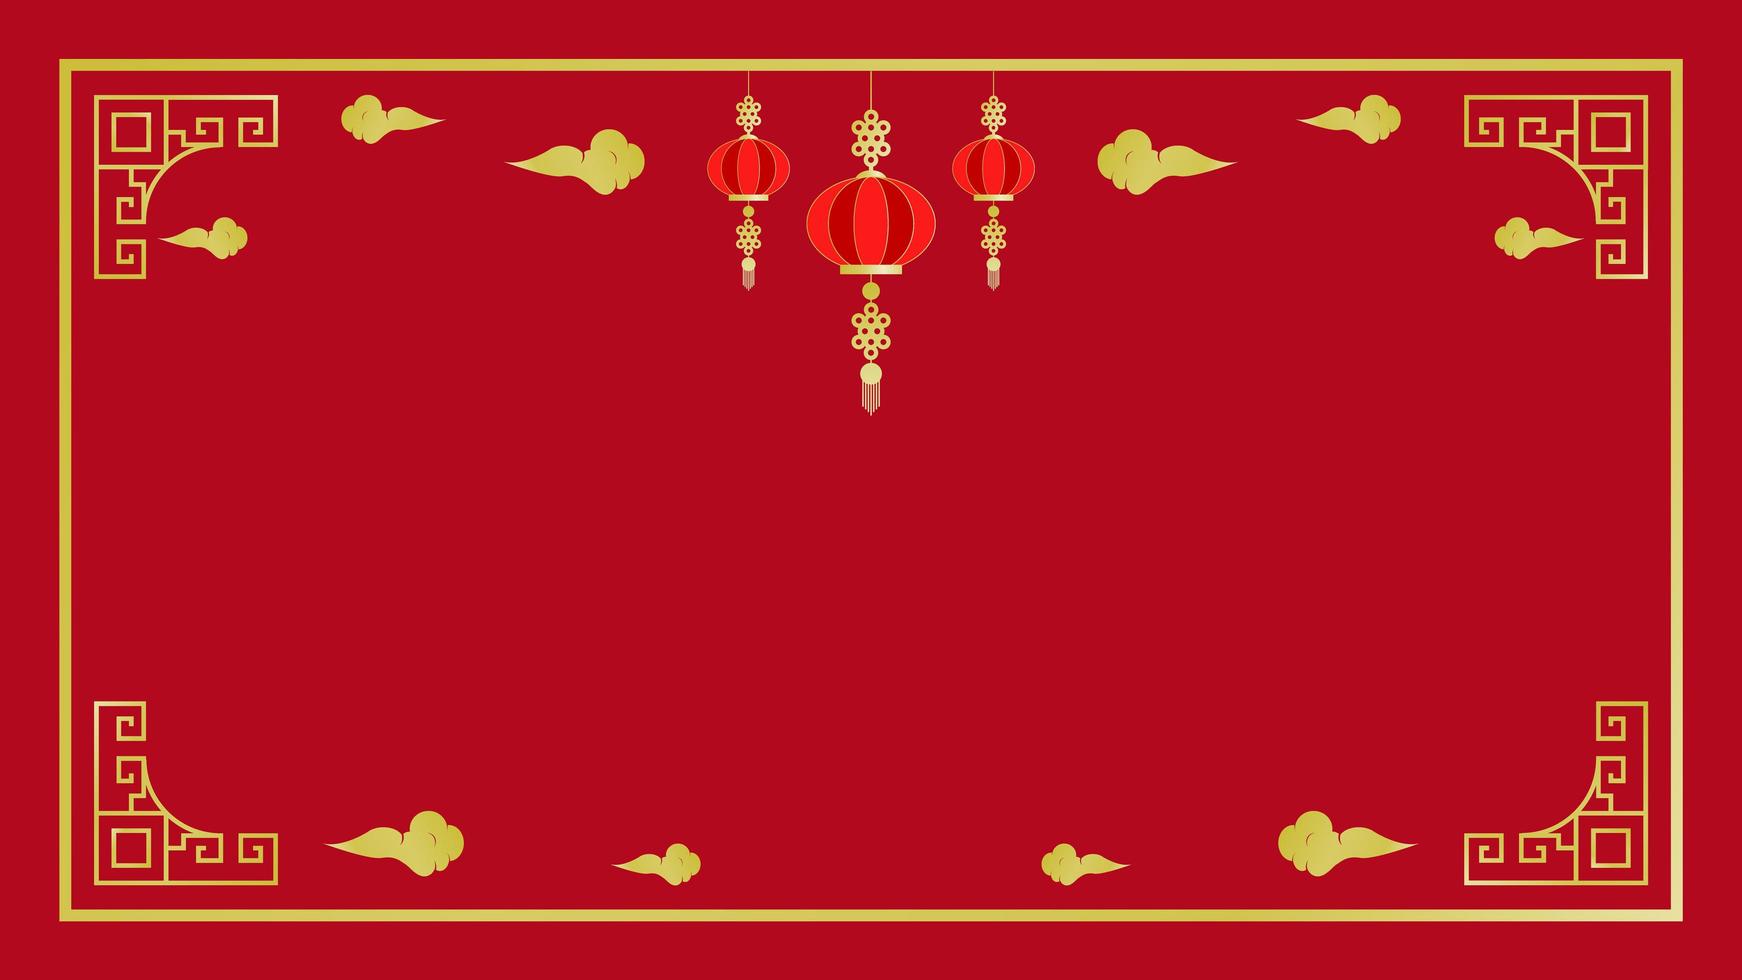 ano novo chinês elementos dourados e moldura em vermelho vetor